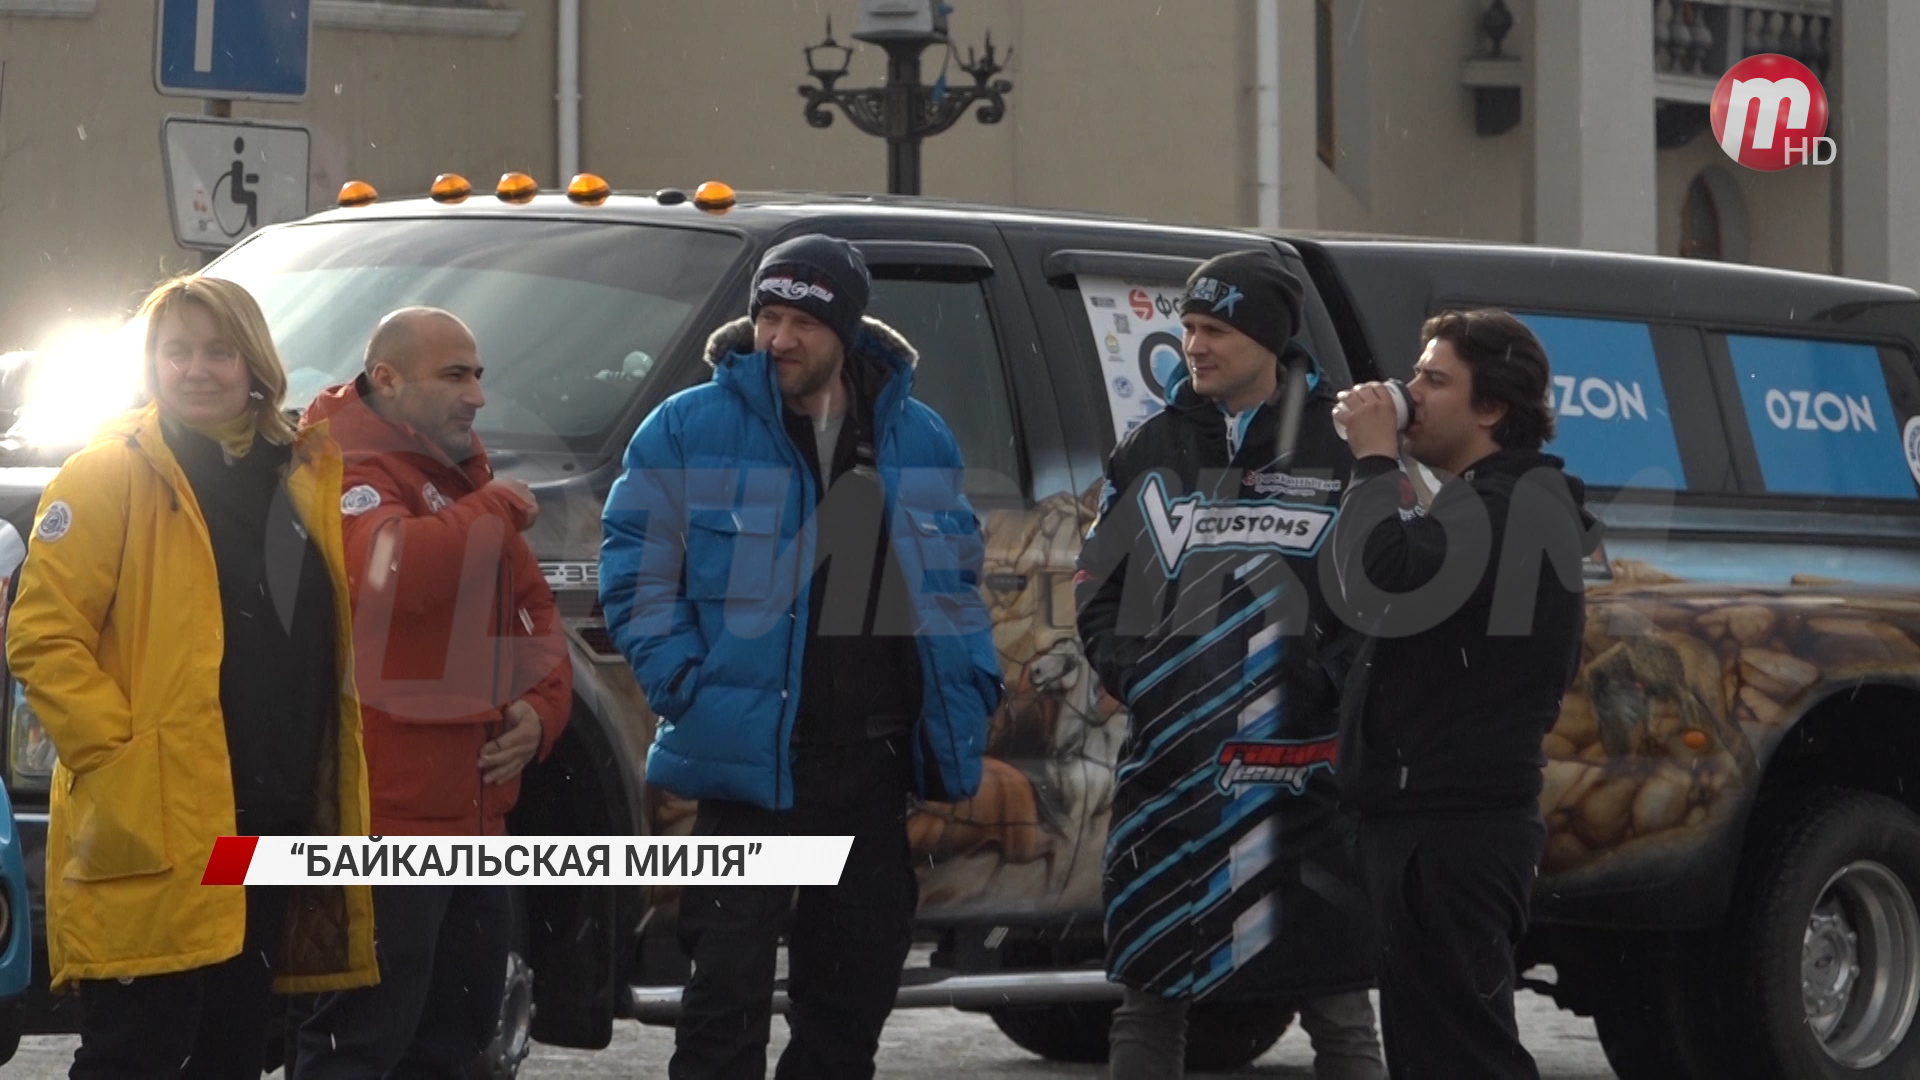 В Бурятию прибыли участники фестиваля скорости "Байкальская миля"